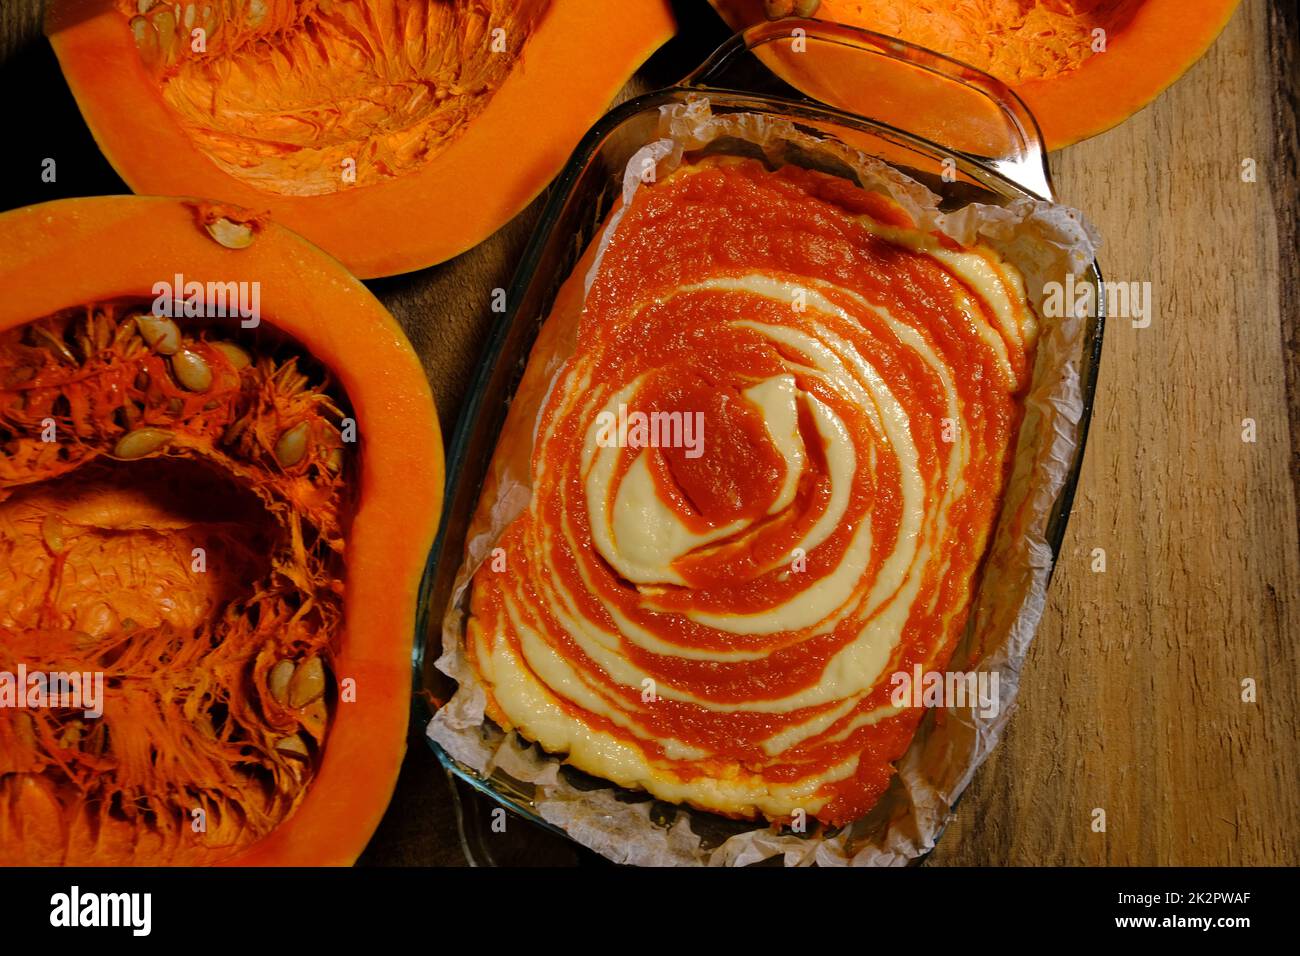 Gâteau au fromage à la tarte à la citrouille maison avec un morceau de citrouille. Dessert orange. image verticale. place pour le texte de fond en bois Banque D'Images